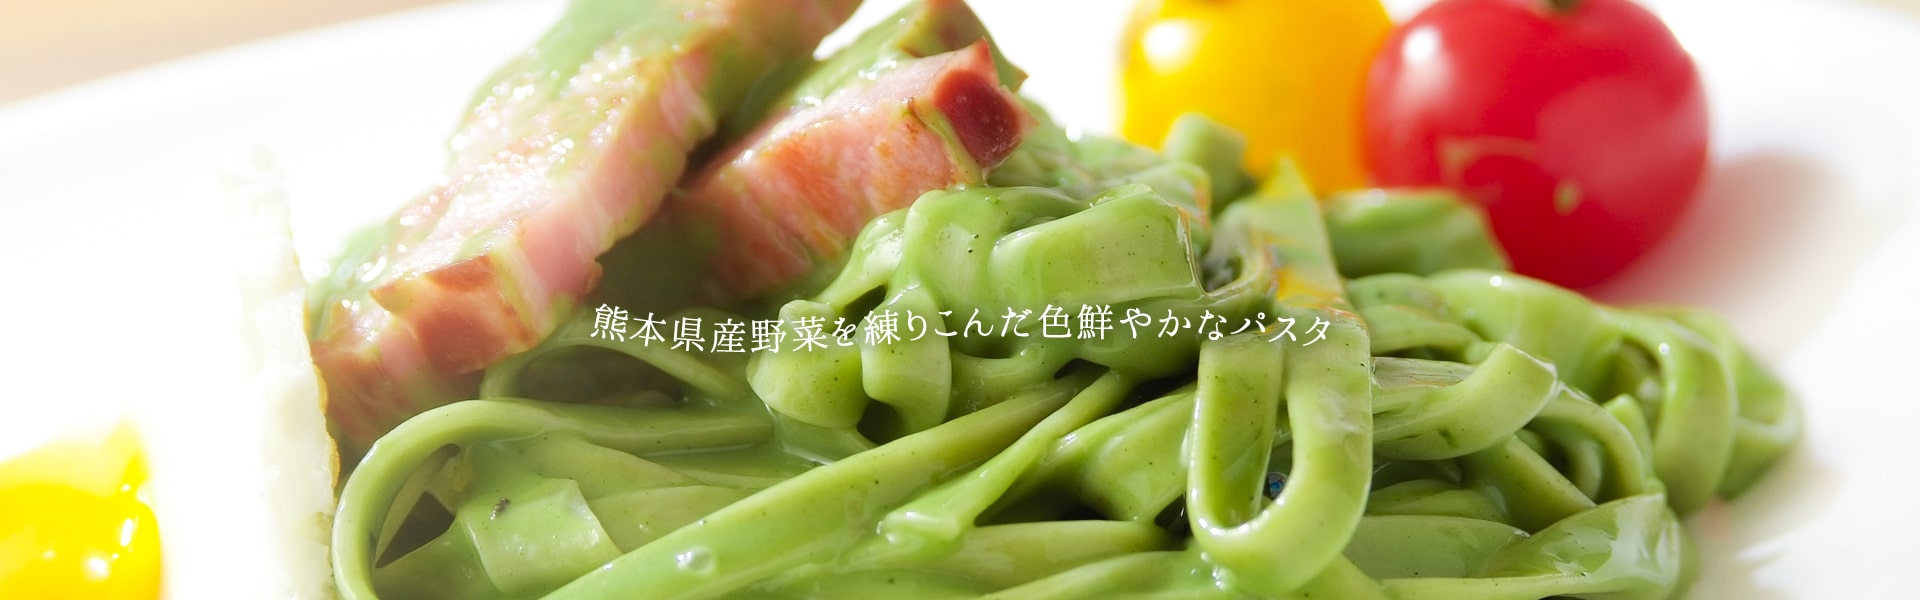 熊本県産野菜を練りこんだ色鮮やかなパスタ